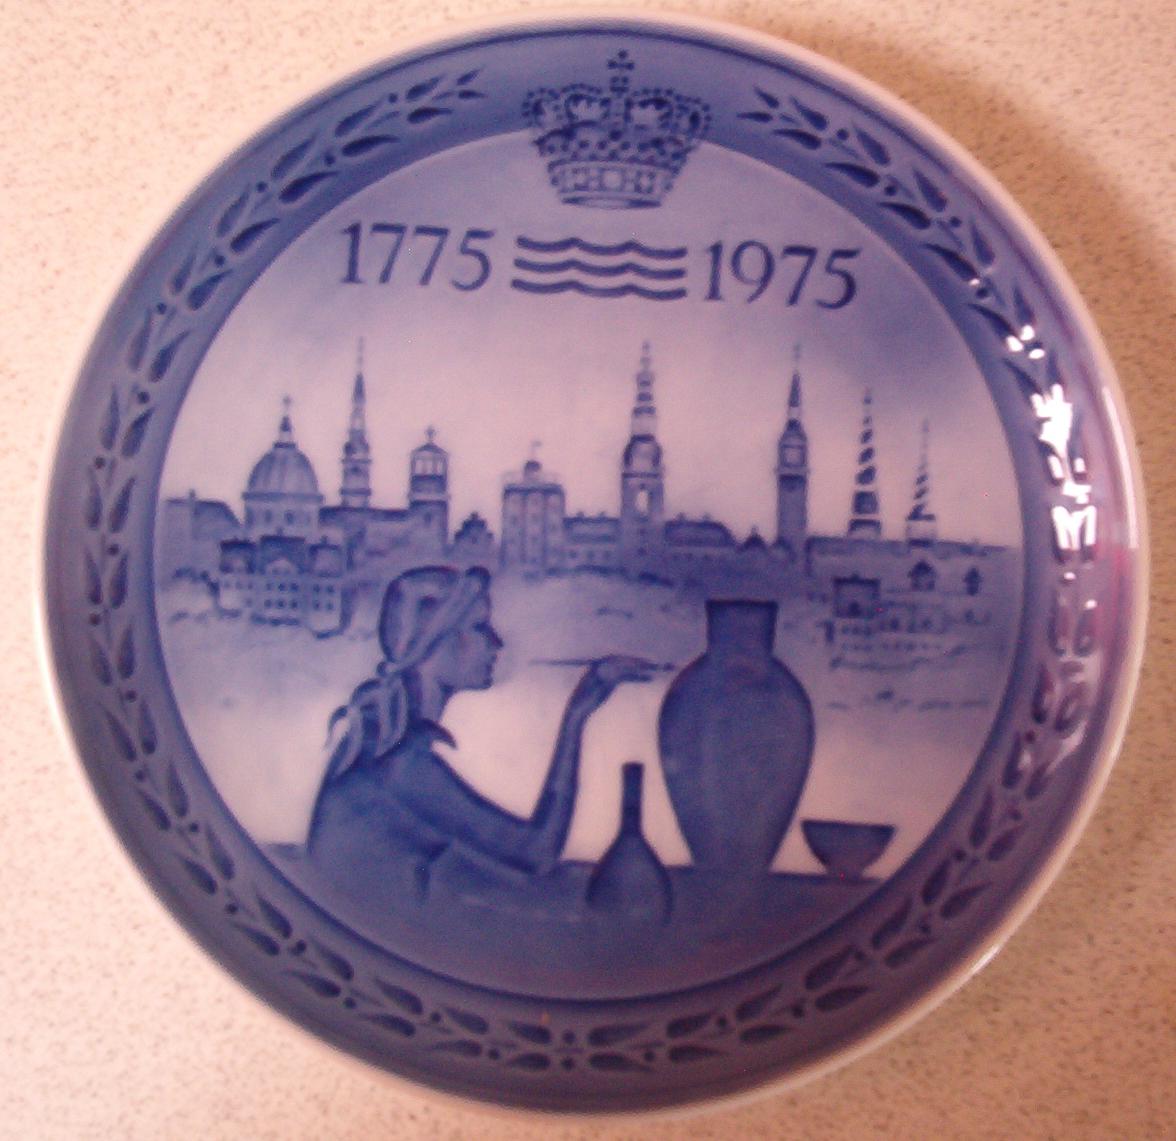 1775 - 1975